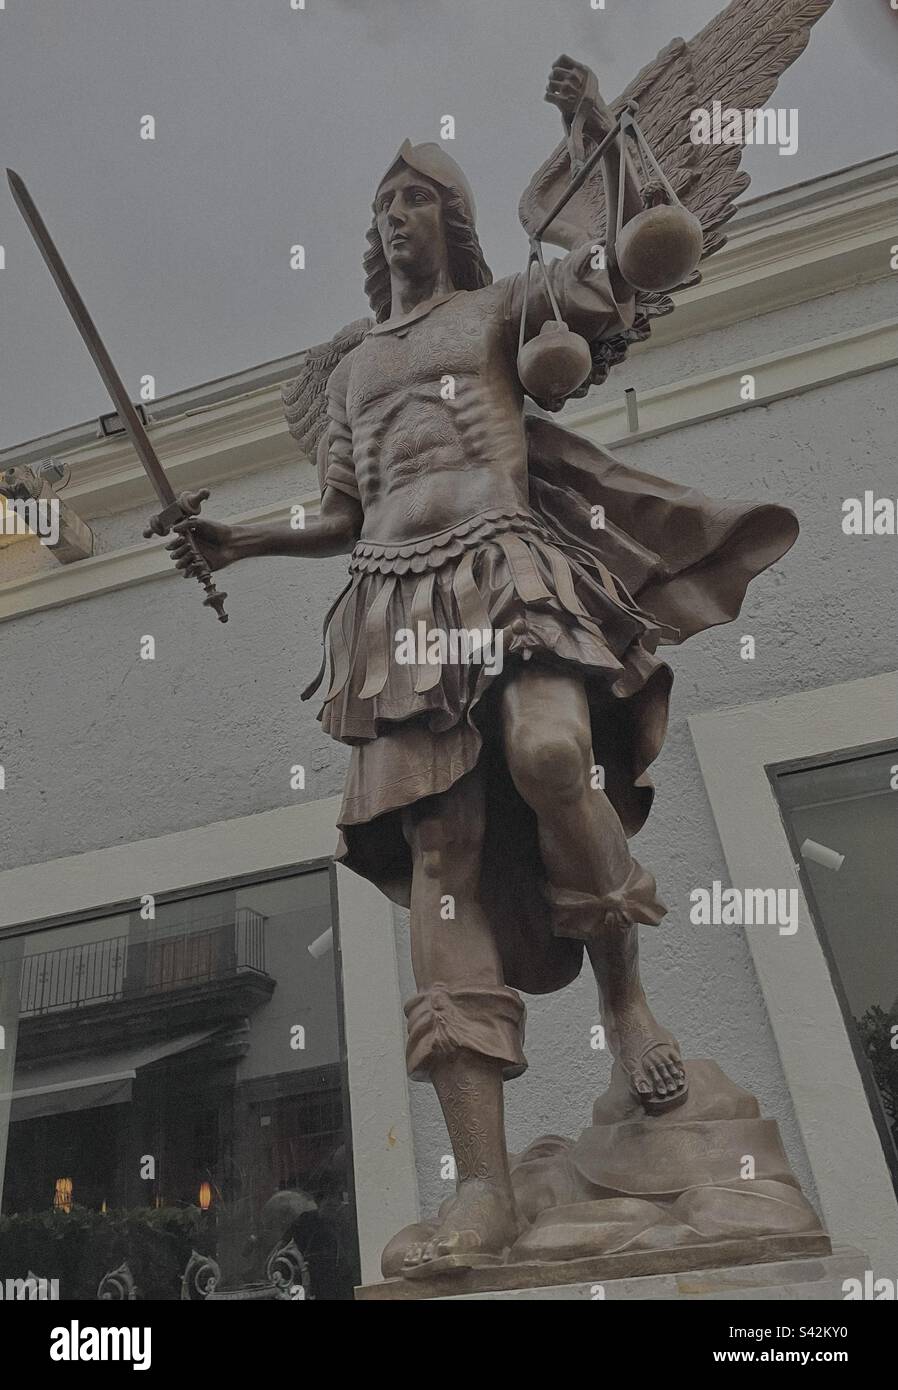 Tlaquepaque, Guadalajara- Monumento de San Miguel Arcángel del artista Agustín Parra que está hecha de bronce, pesa cuatro toneladas y mide seis metros. Stock Photo